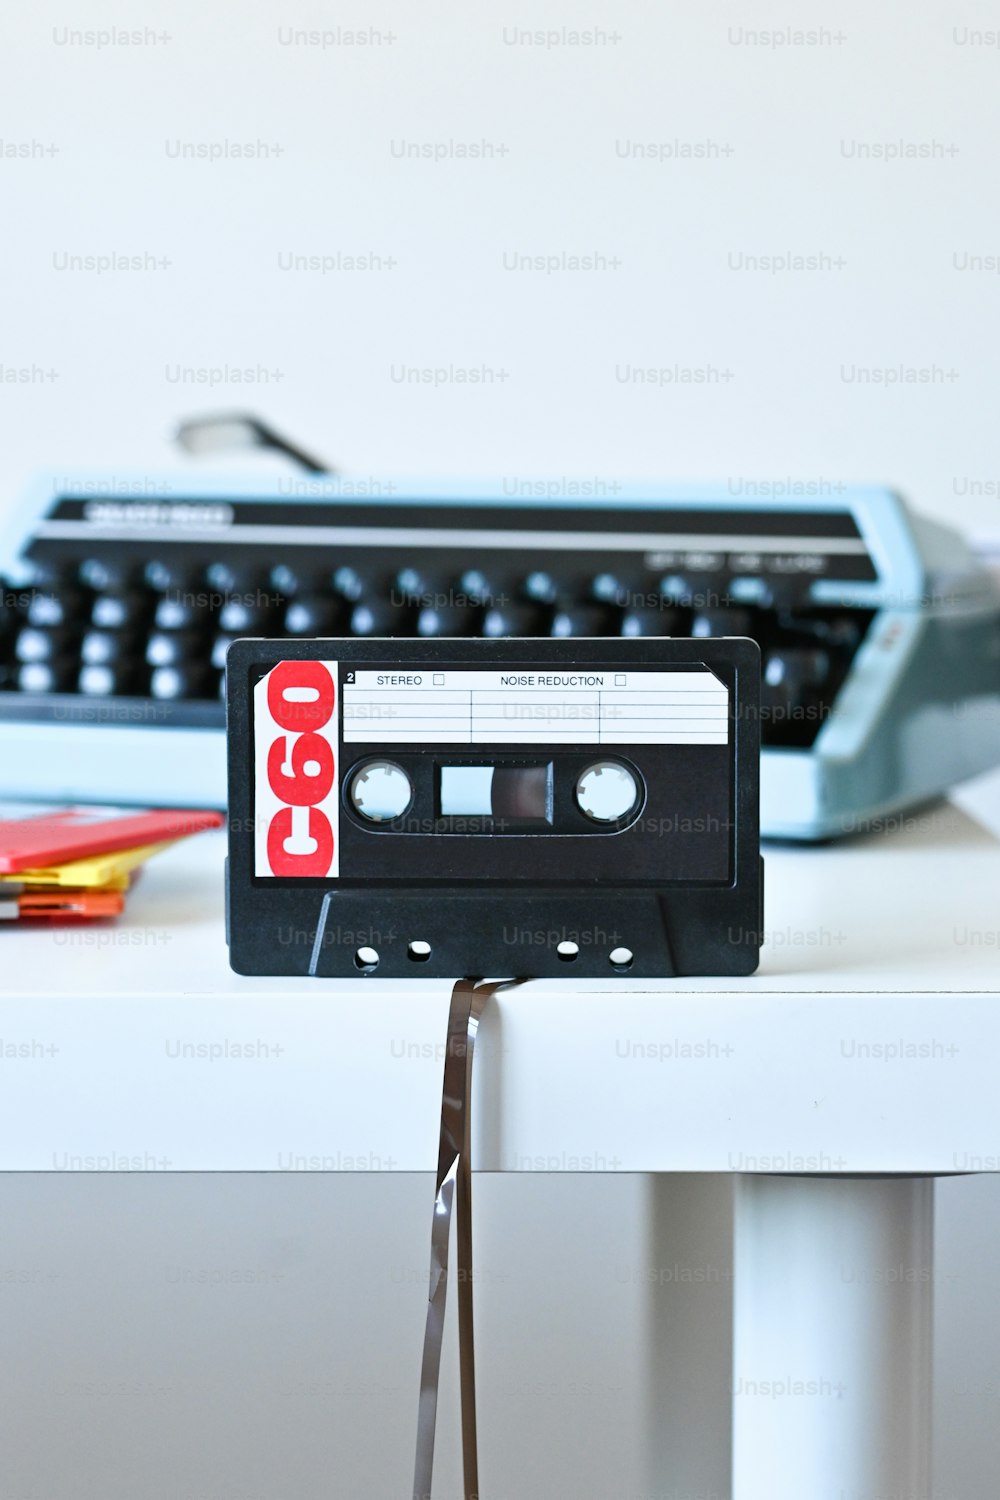 Un reproductor de casetes anticuado sentado en una mesa junto a una máquina de escribir